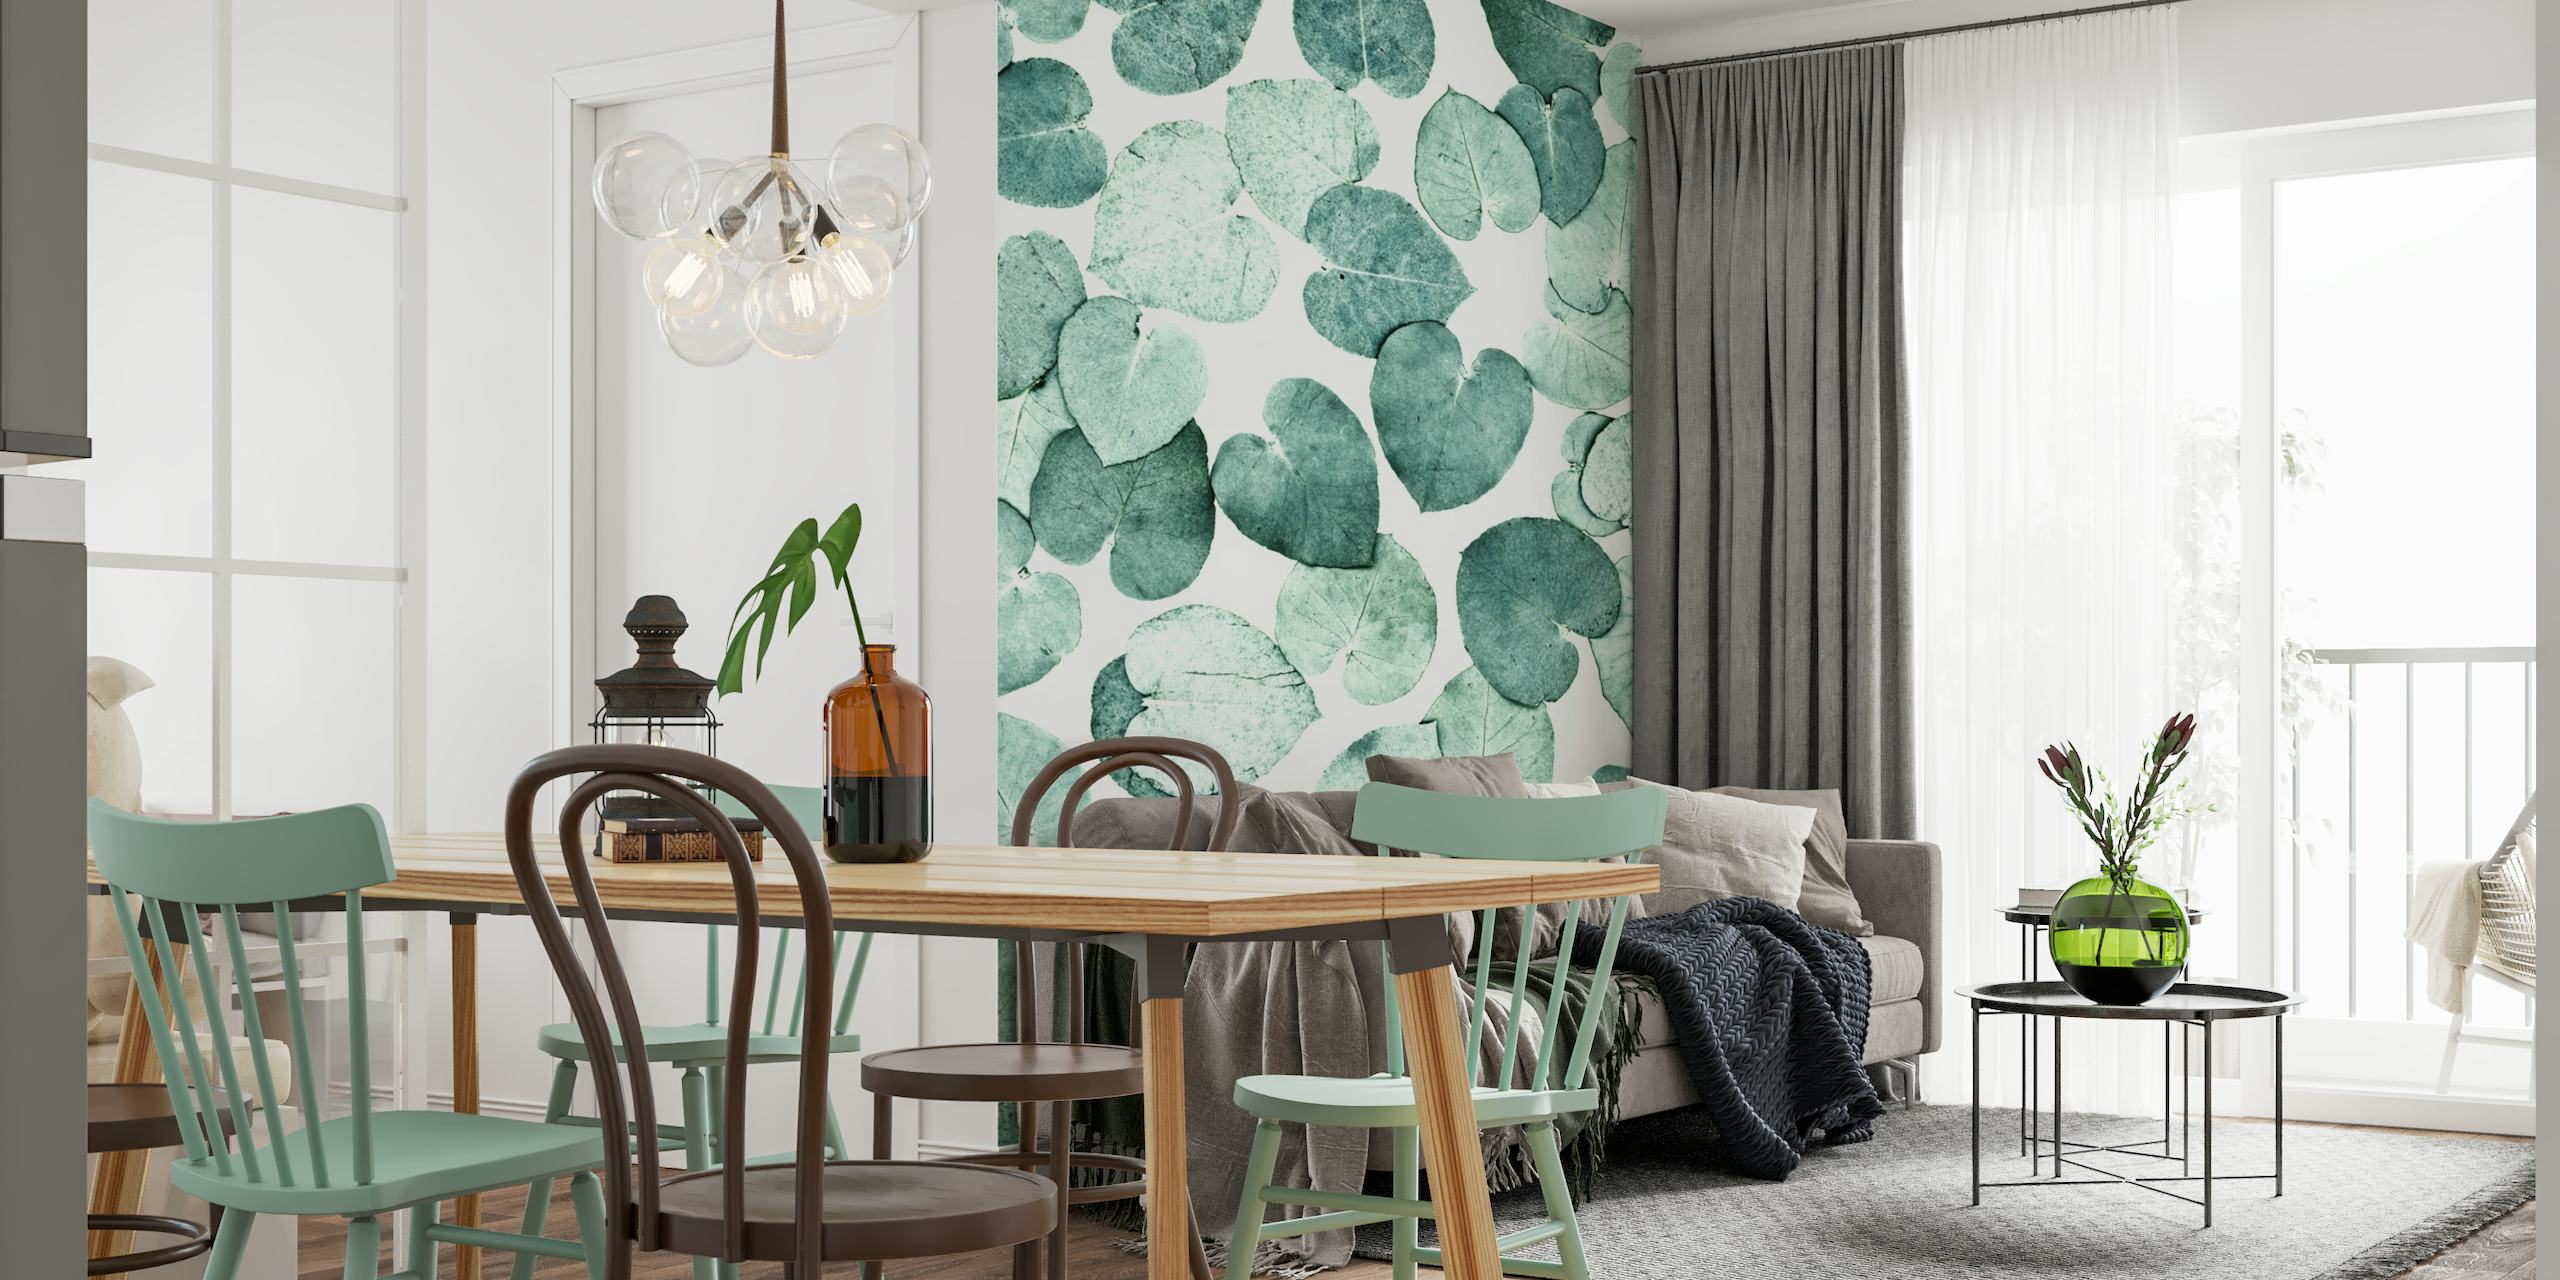 Grønt bladmønster vægmaleri til roligt interiørdesign